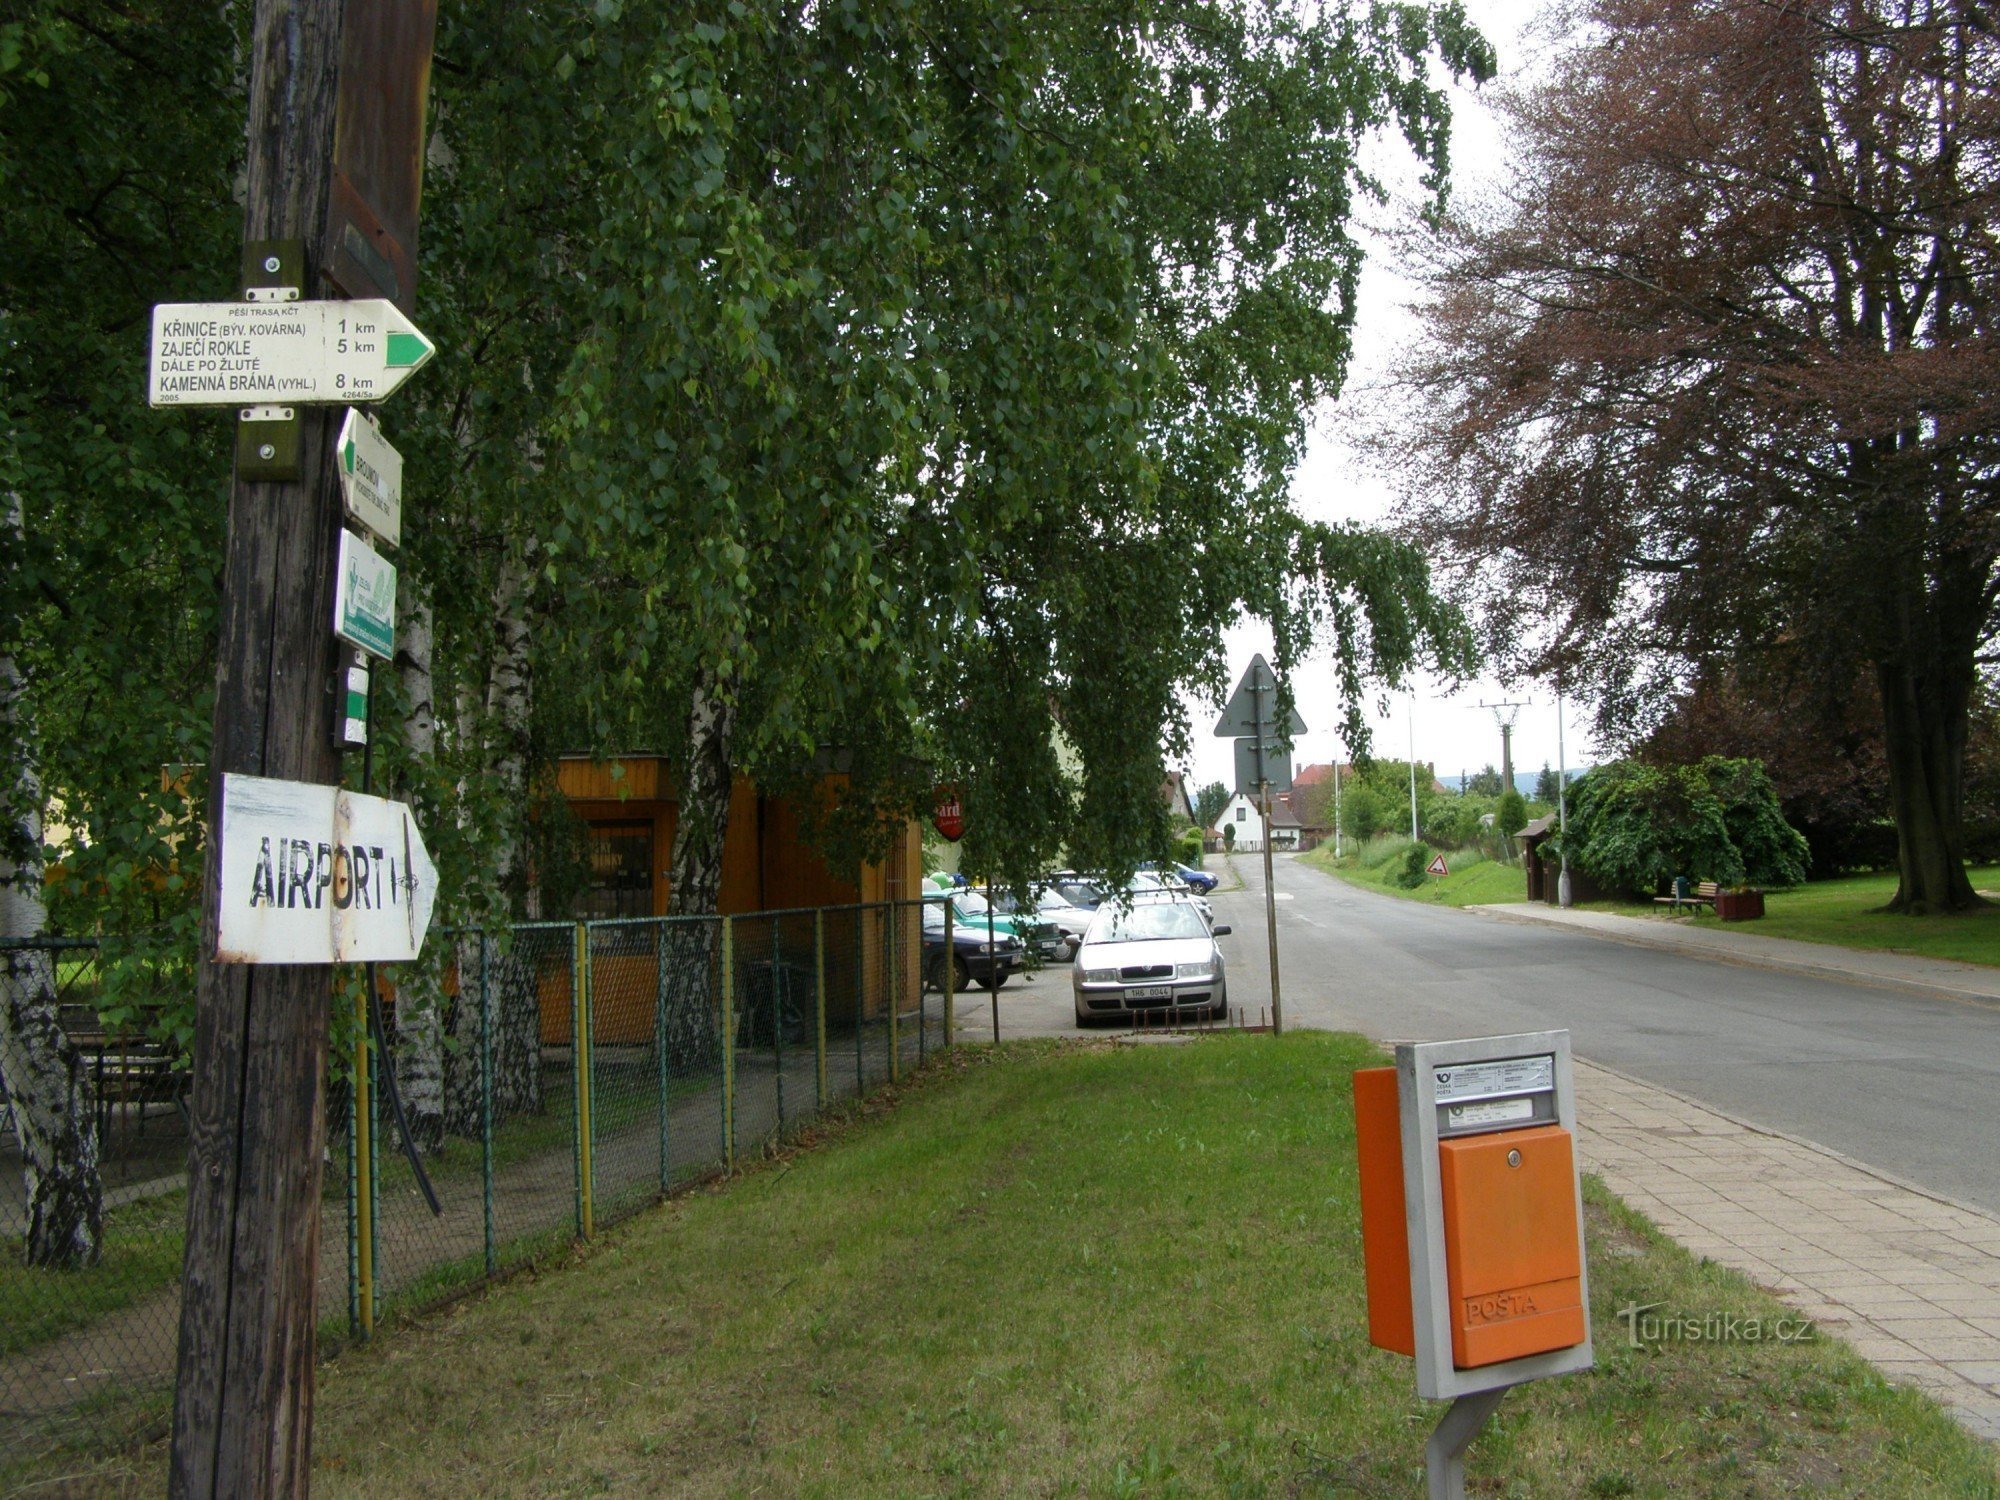 туристичне перехрестя Броумов - біля дерев'яної церкви (біля лікарні)